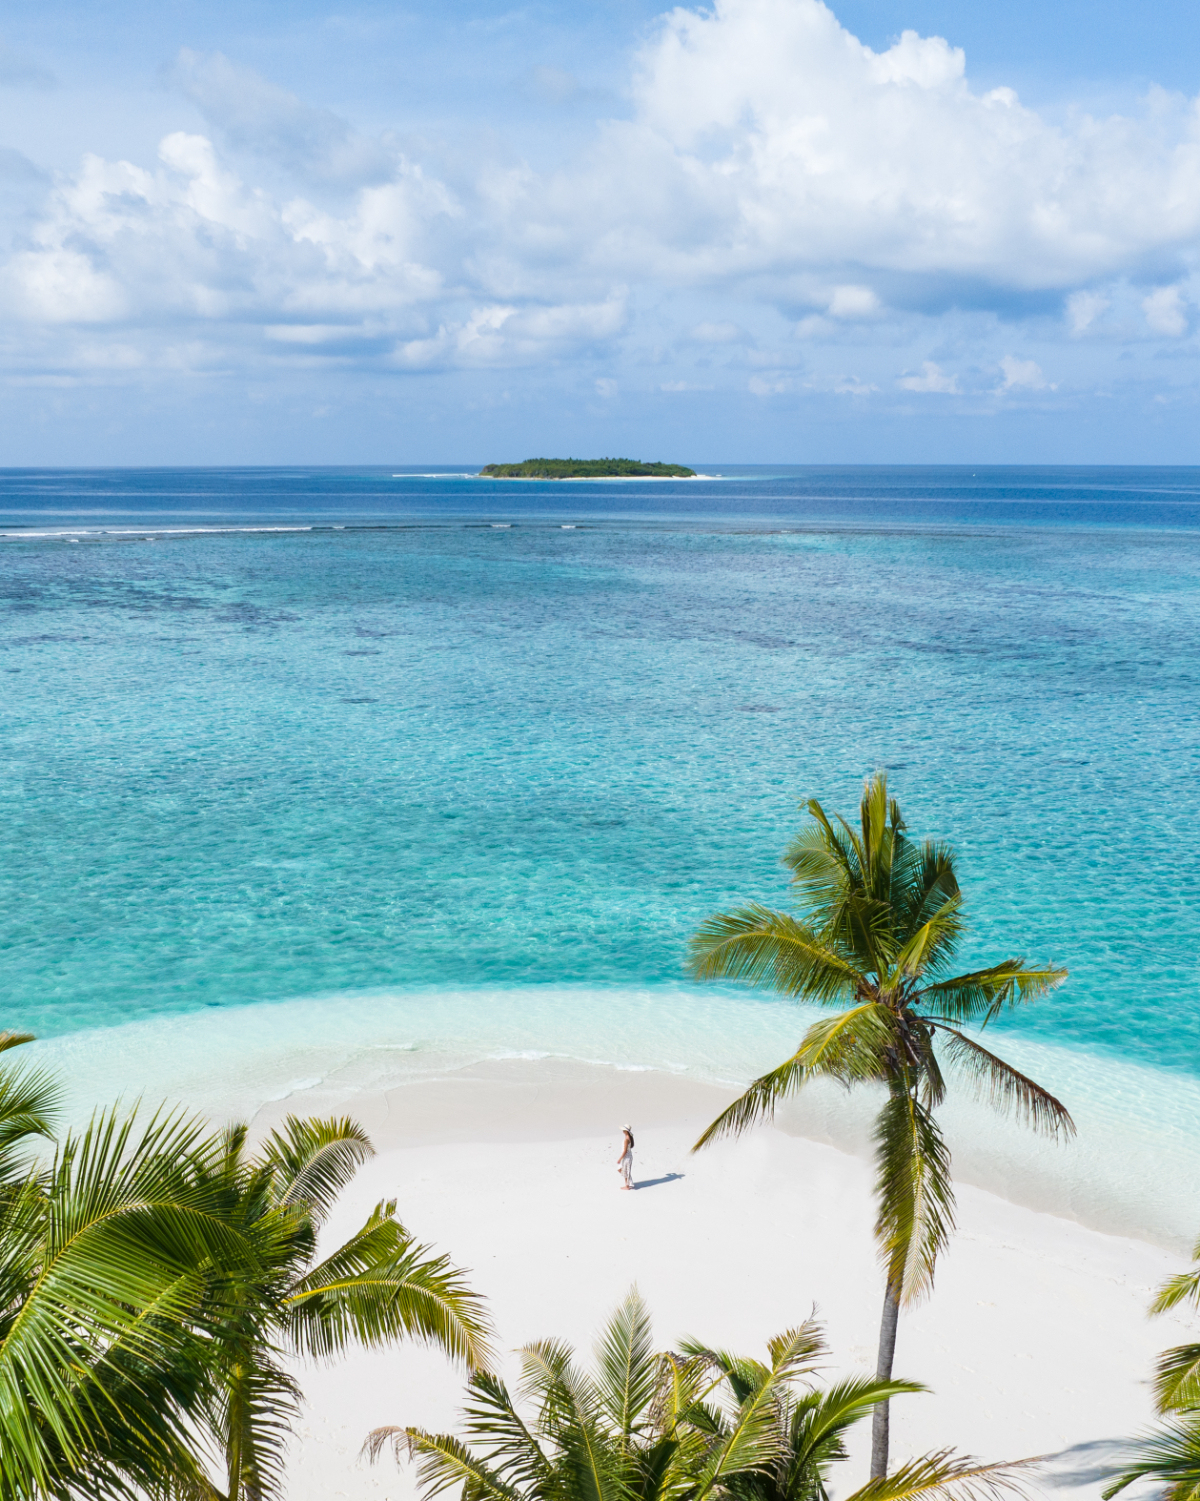 阿丽拉科泰法鲁岛 Alila Kothaifaru Maldives ,马尔代夫风景图片集:沙滩beach与海水water太美，泳池pool与水上活动watersport好玩